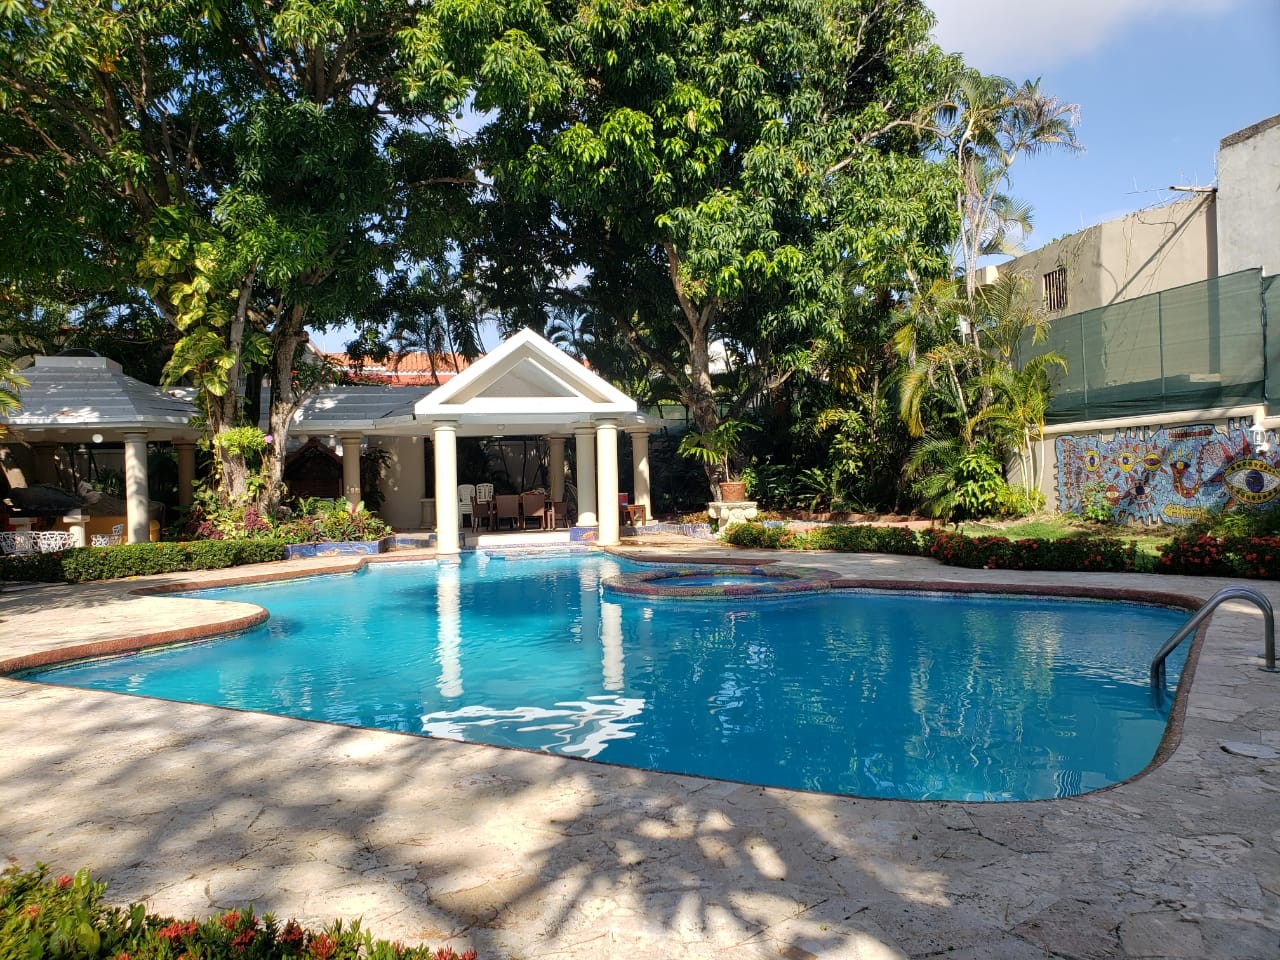 casas - Casa  2 niveles con piscina en Alameda